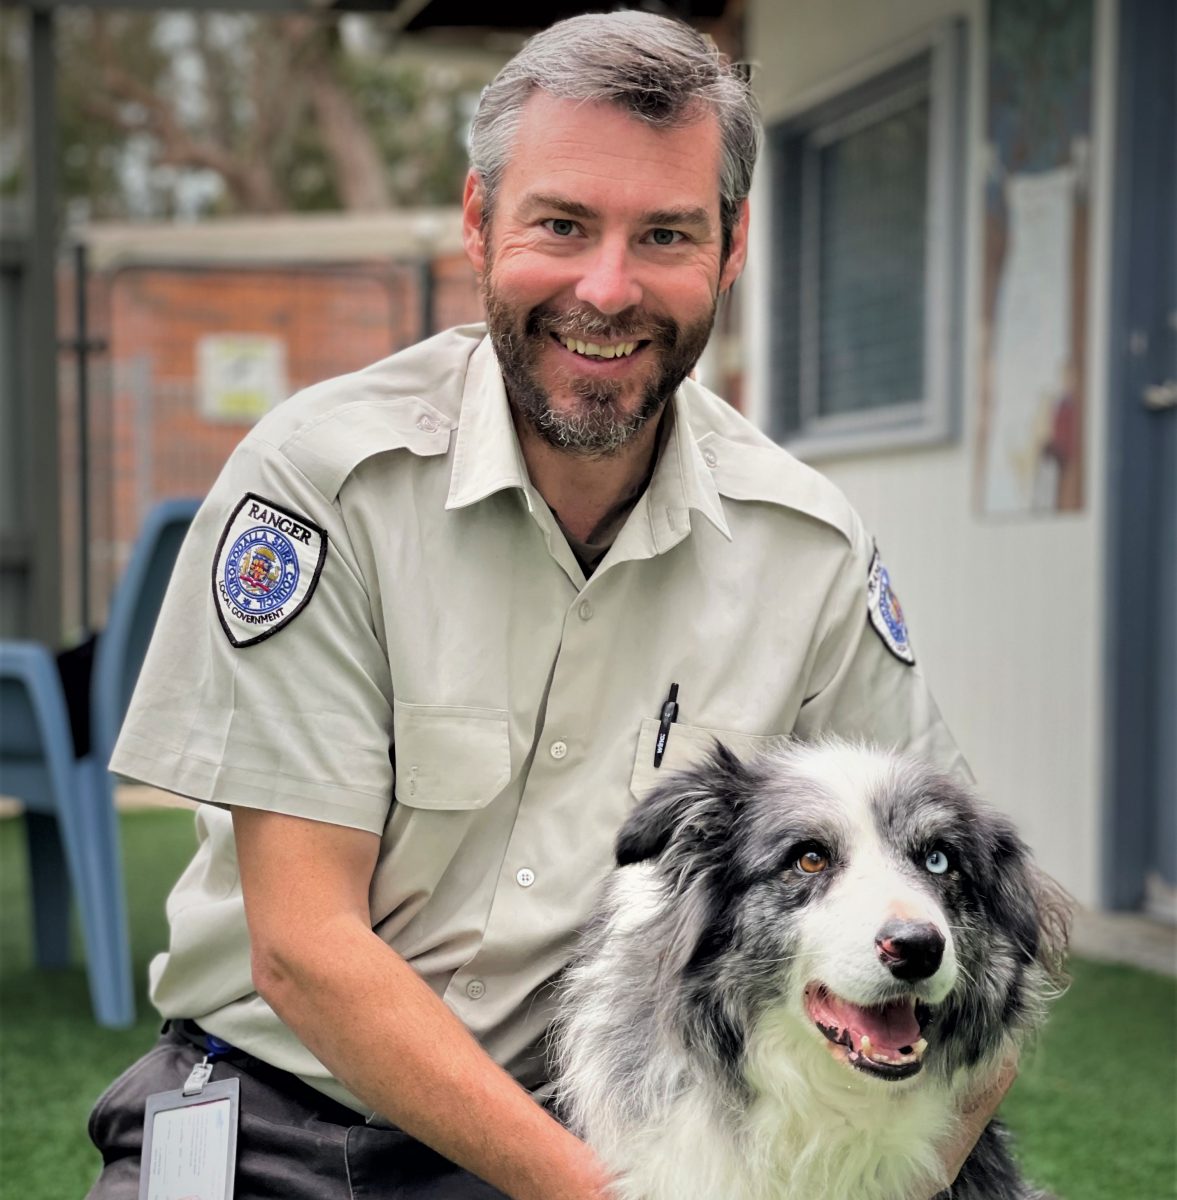 Caption: Ranger Jason Ritzen with a dog